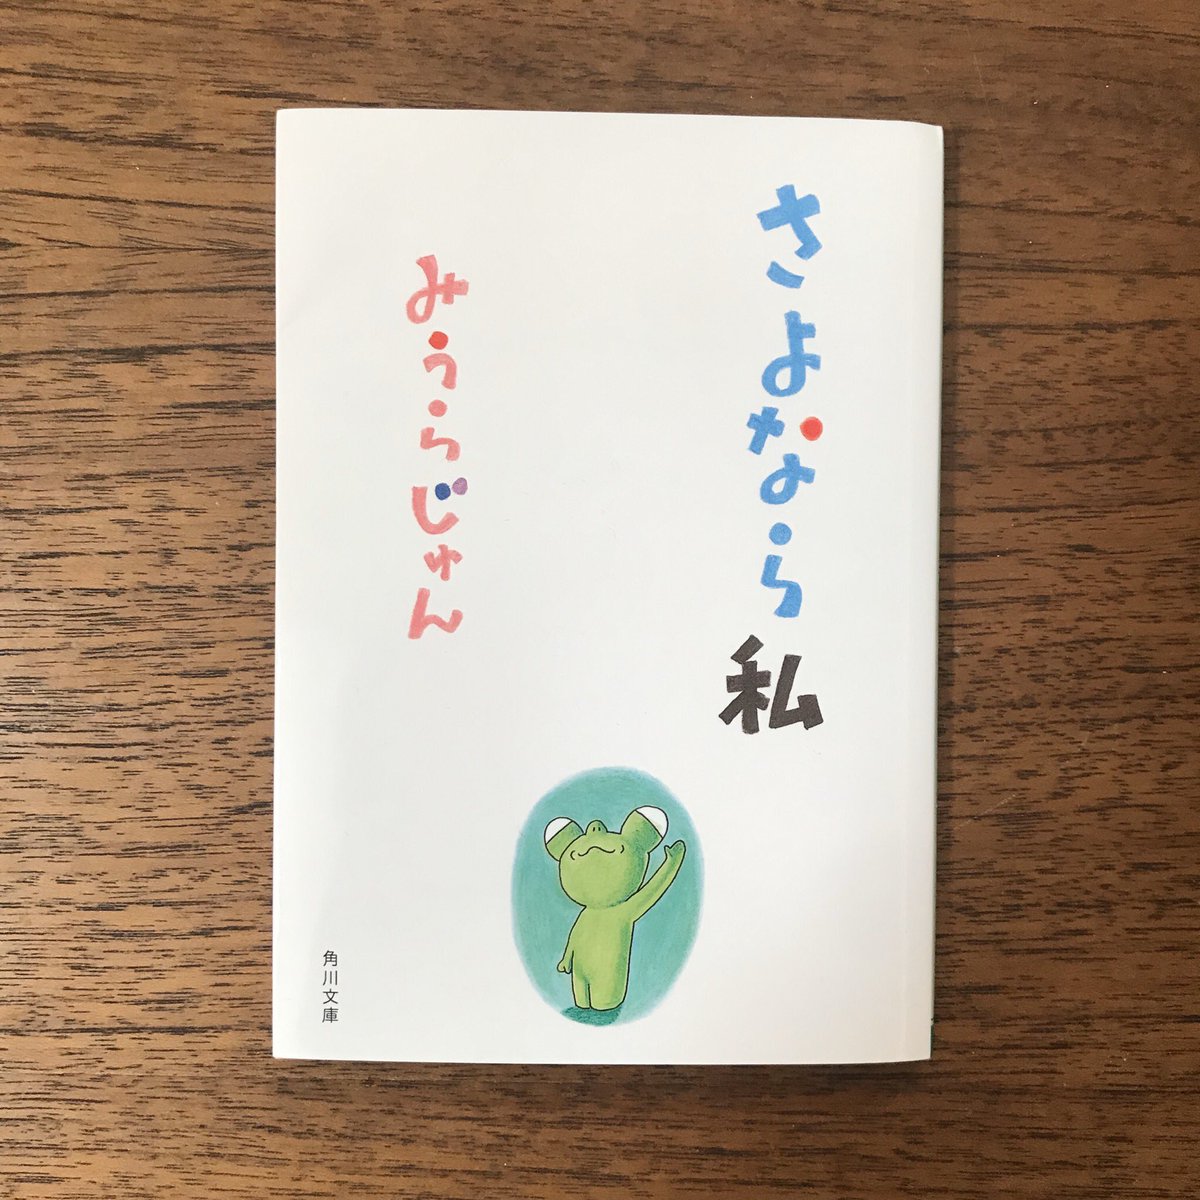 いつから読み始めたか分からない宮崎駿著『出発点』やっと読み終えました。今年1番良い本でした。他さいきん読んだ本たち。 